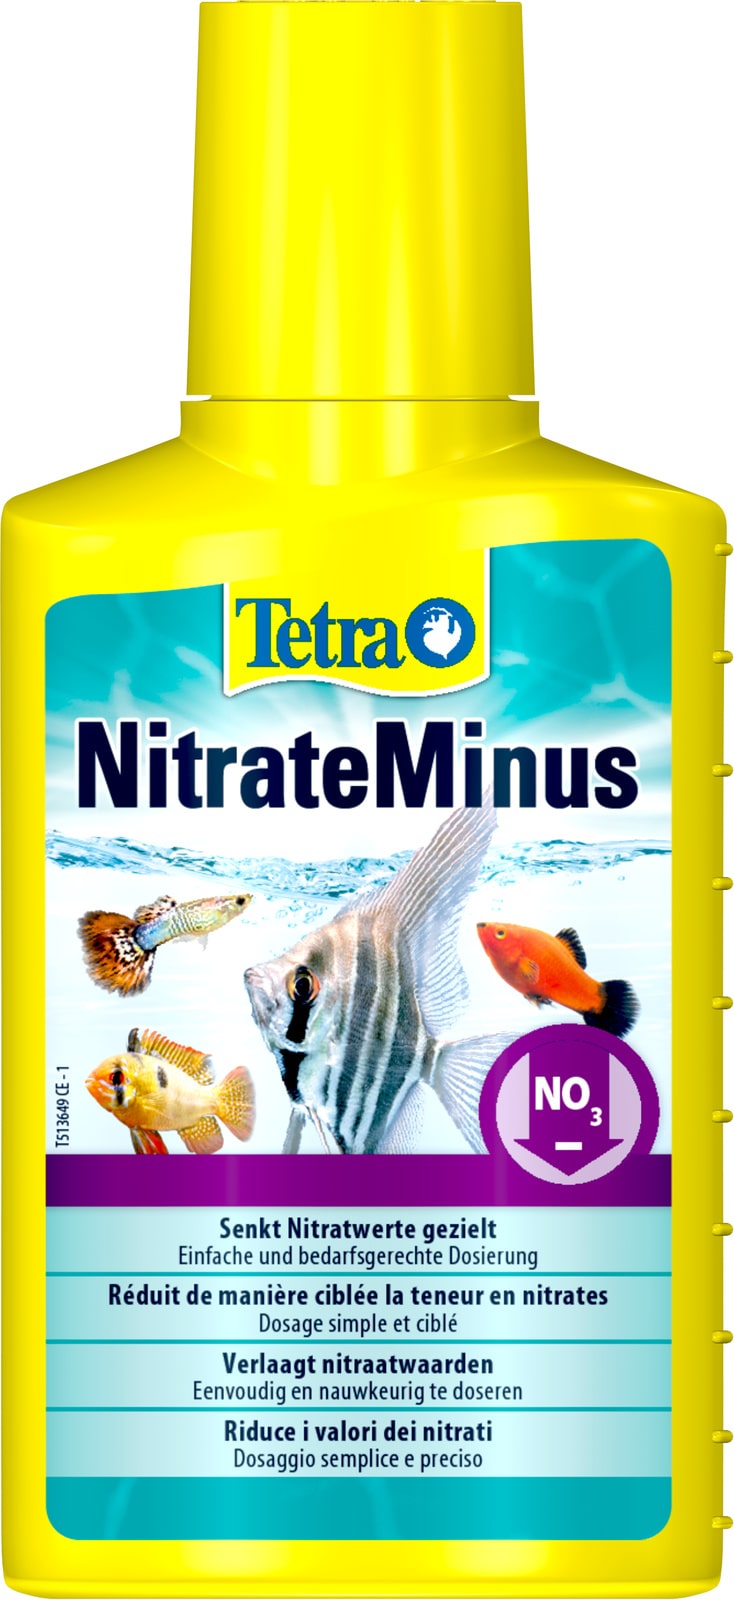 tetra-nitrateminus-100-ml-traitement-de-l-eau-pour-reduire-efficacement-les-nitrates-min